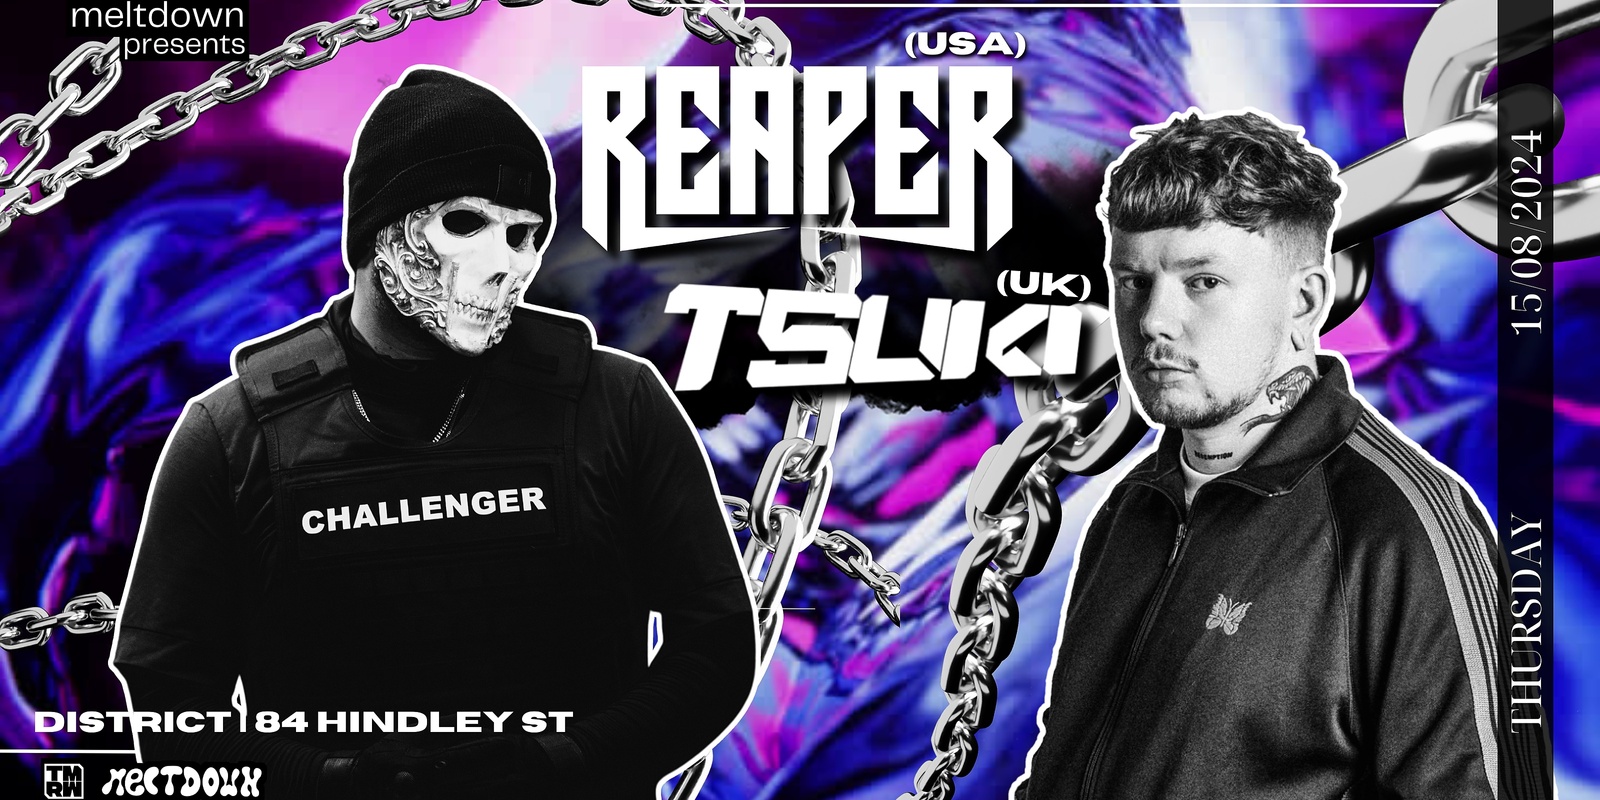 Banner image for Reaper x Tsuki x Meltdown Adelaide